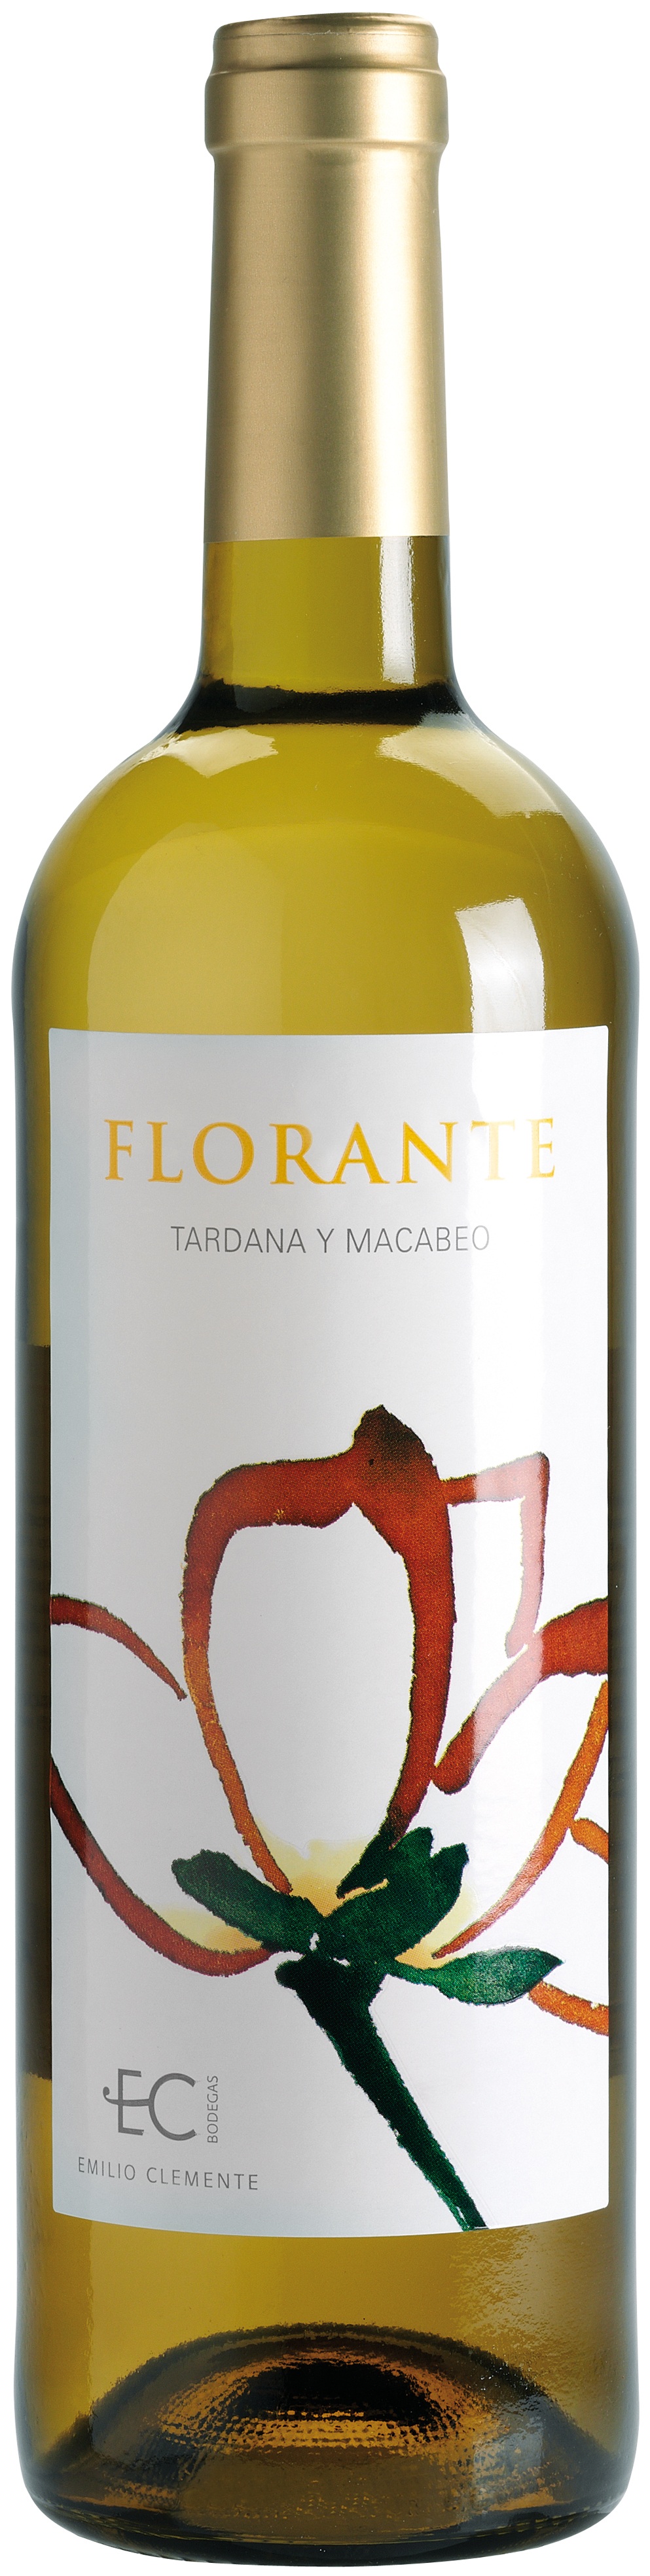 Logo del vino Florante Joven